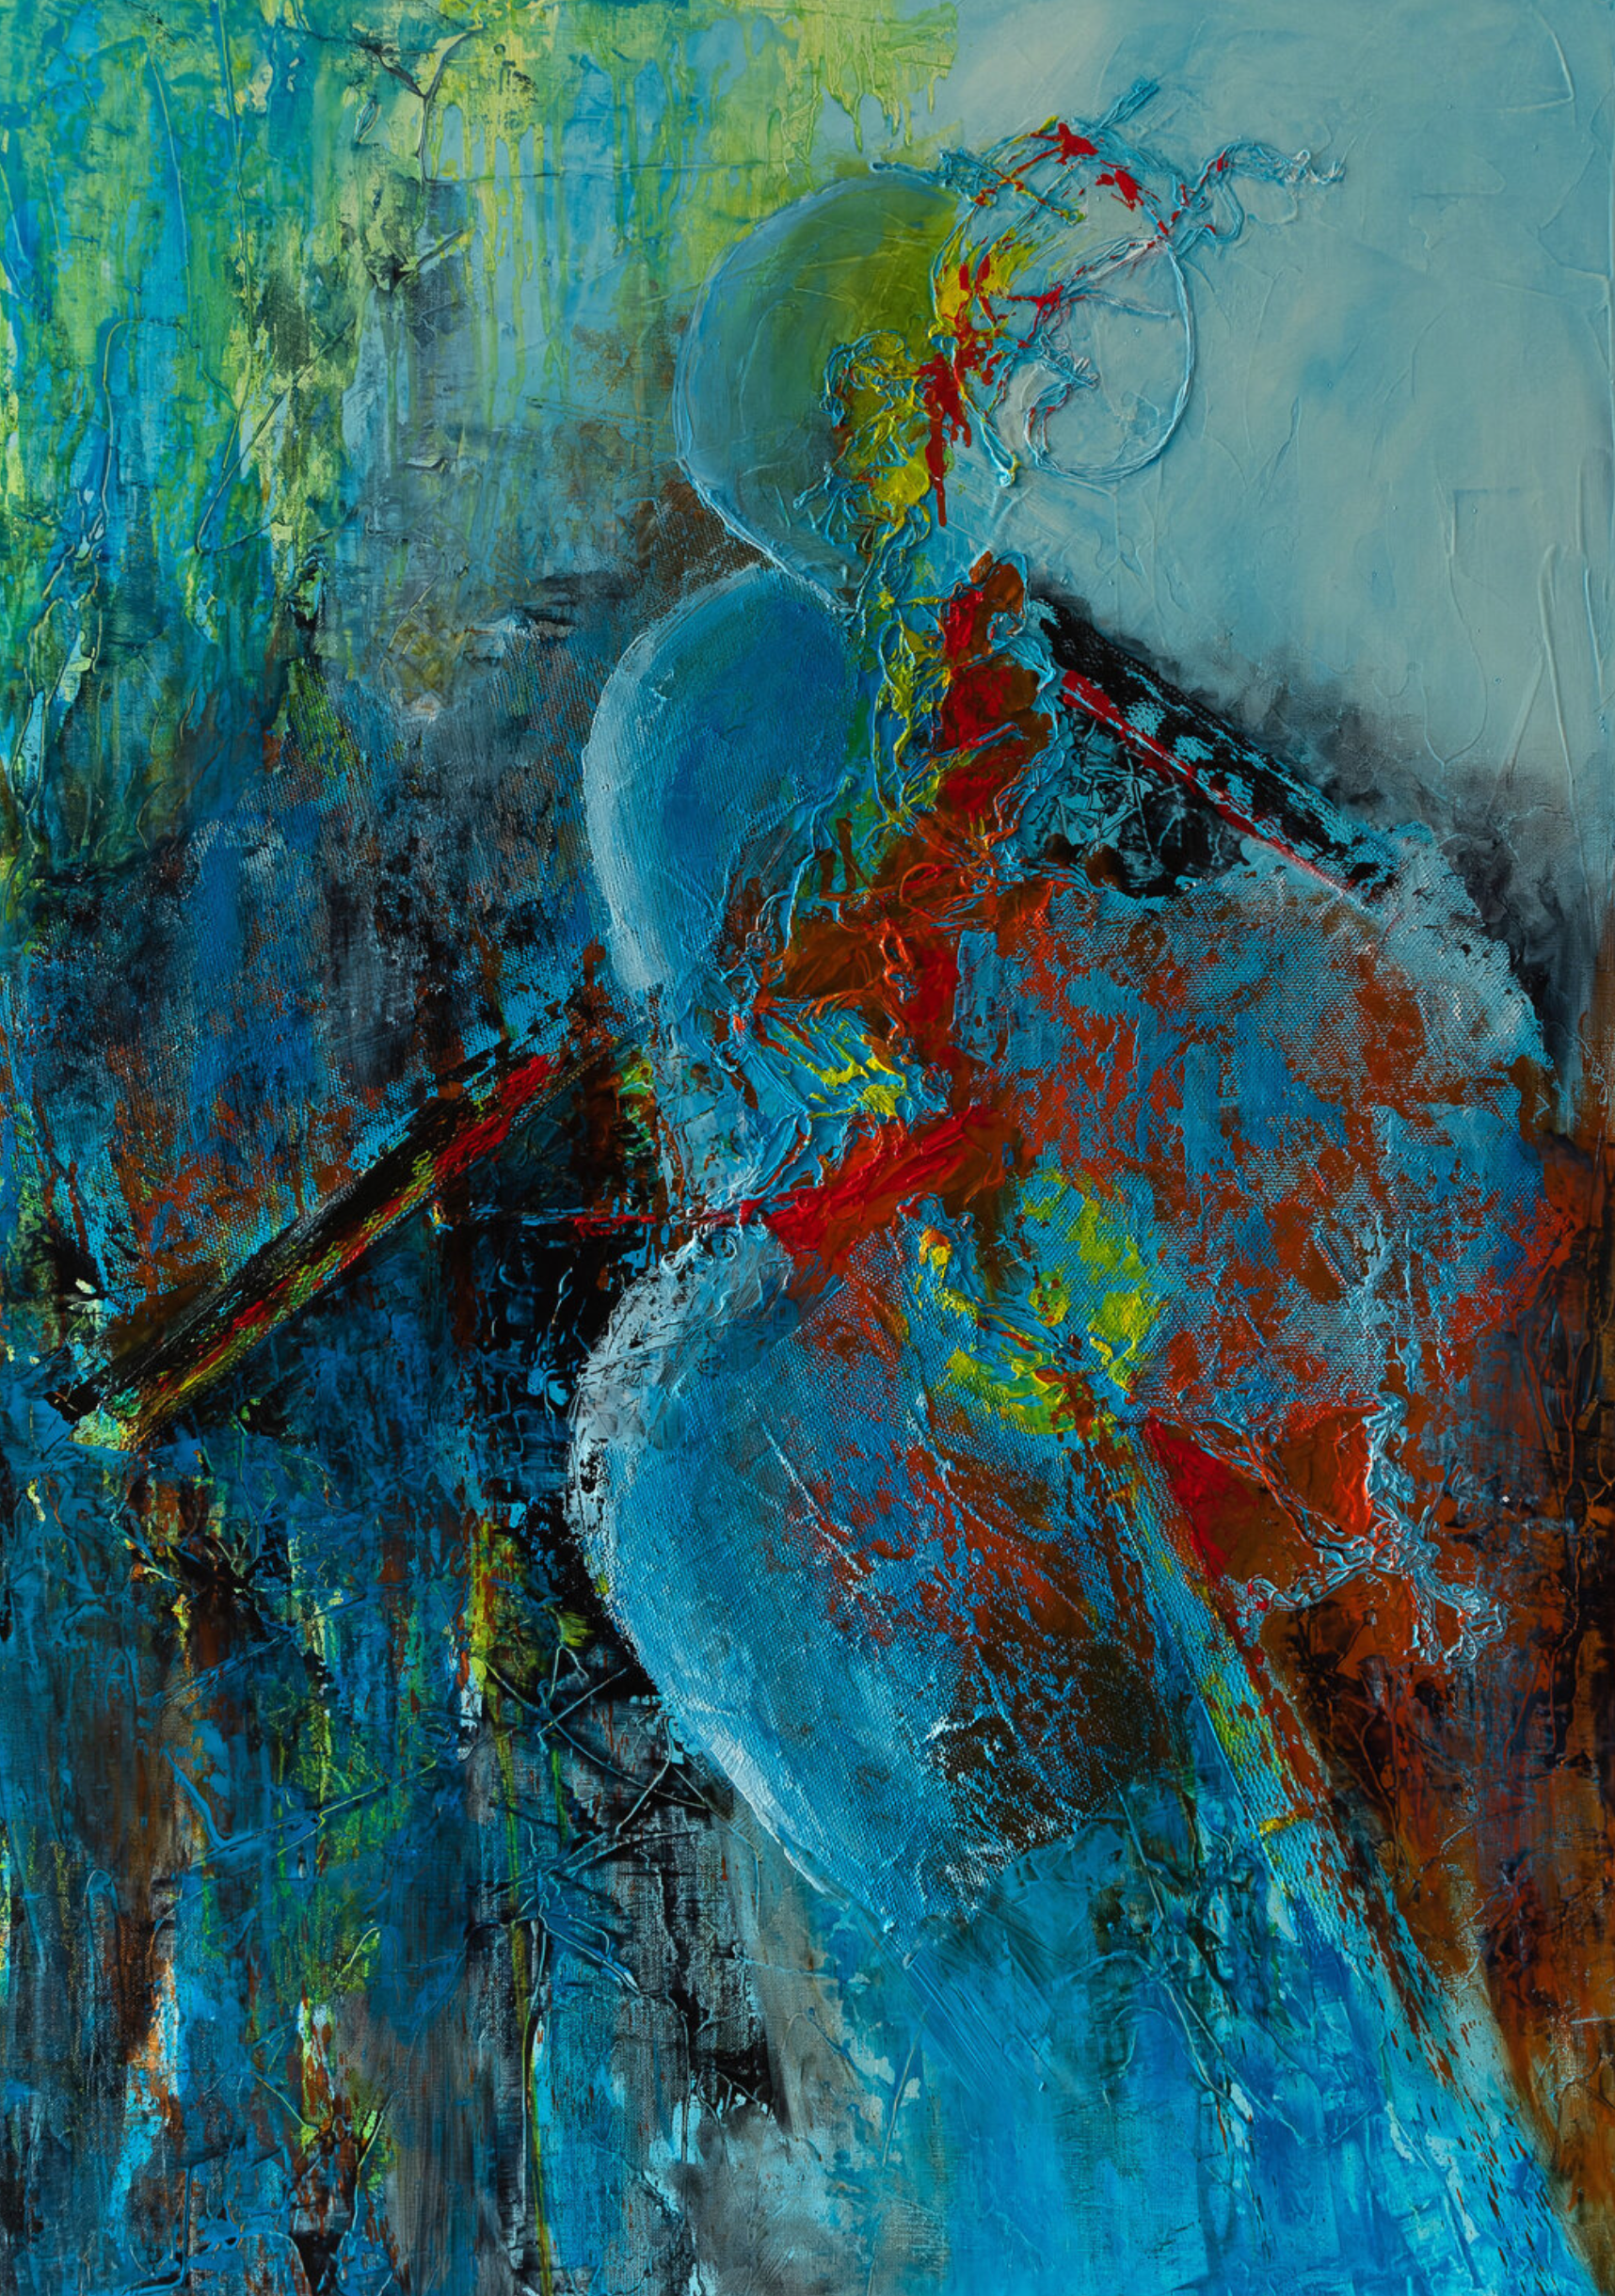 El cuadro abstracto "Salomé" de Françoise Dugourd-Caput muestra En el centro de un movimiento azulado y anaranjado, una vaga silueta femenina, apenas esbozada, juega con las formas y los materiales, dando al conjunto abstracto ese toque de elegancia y sensualidad